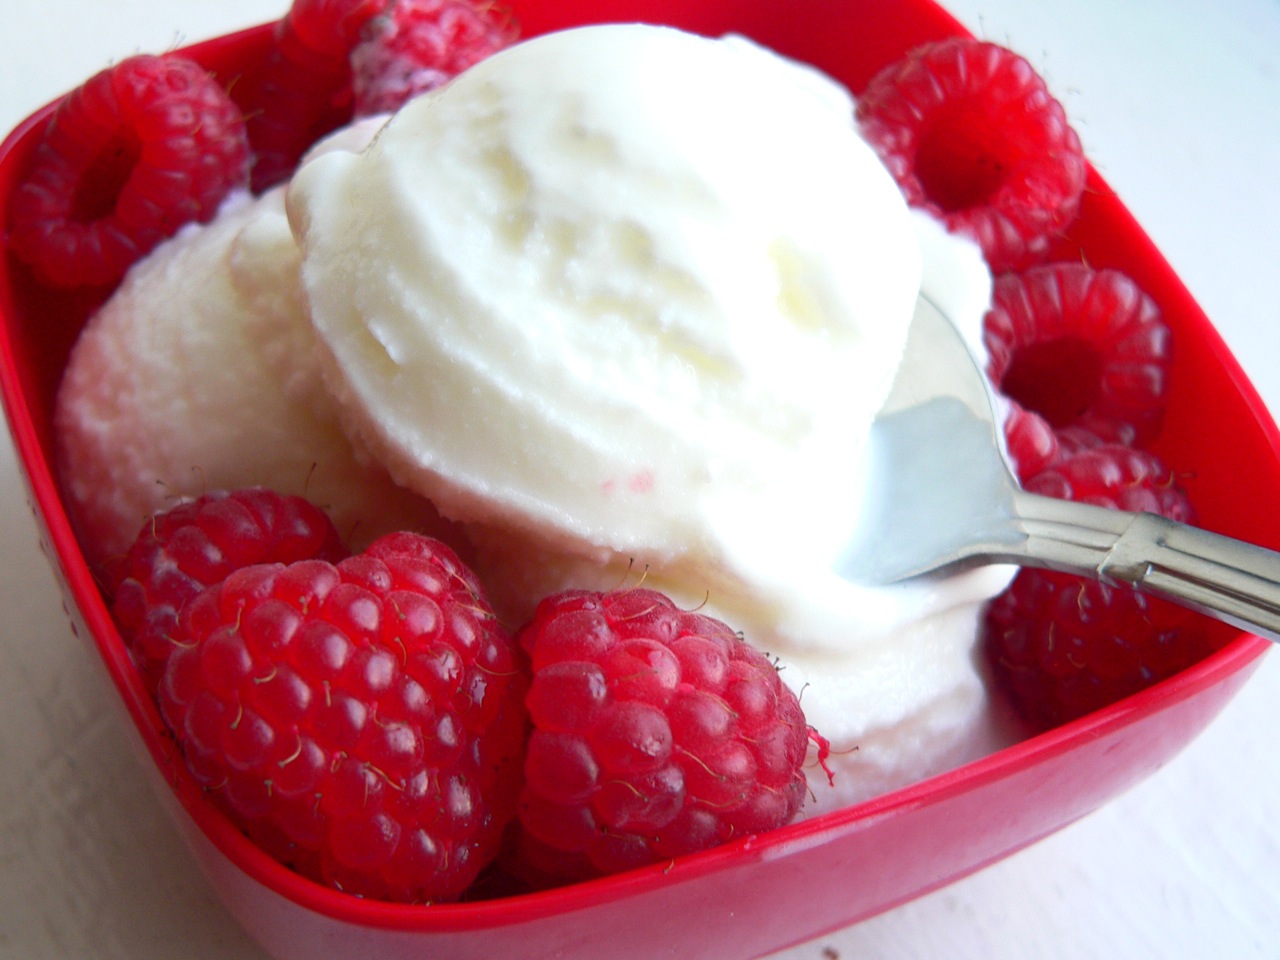 The Best Frozen Yogurt | The Frozen Fix: Ice cream, sorbet, and frozen ...